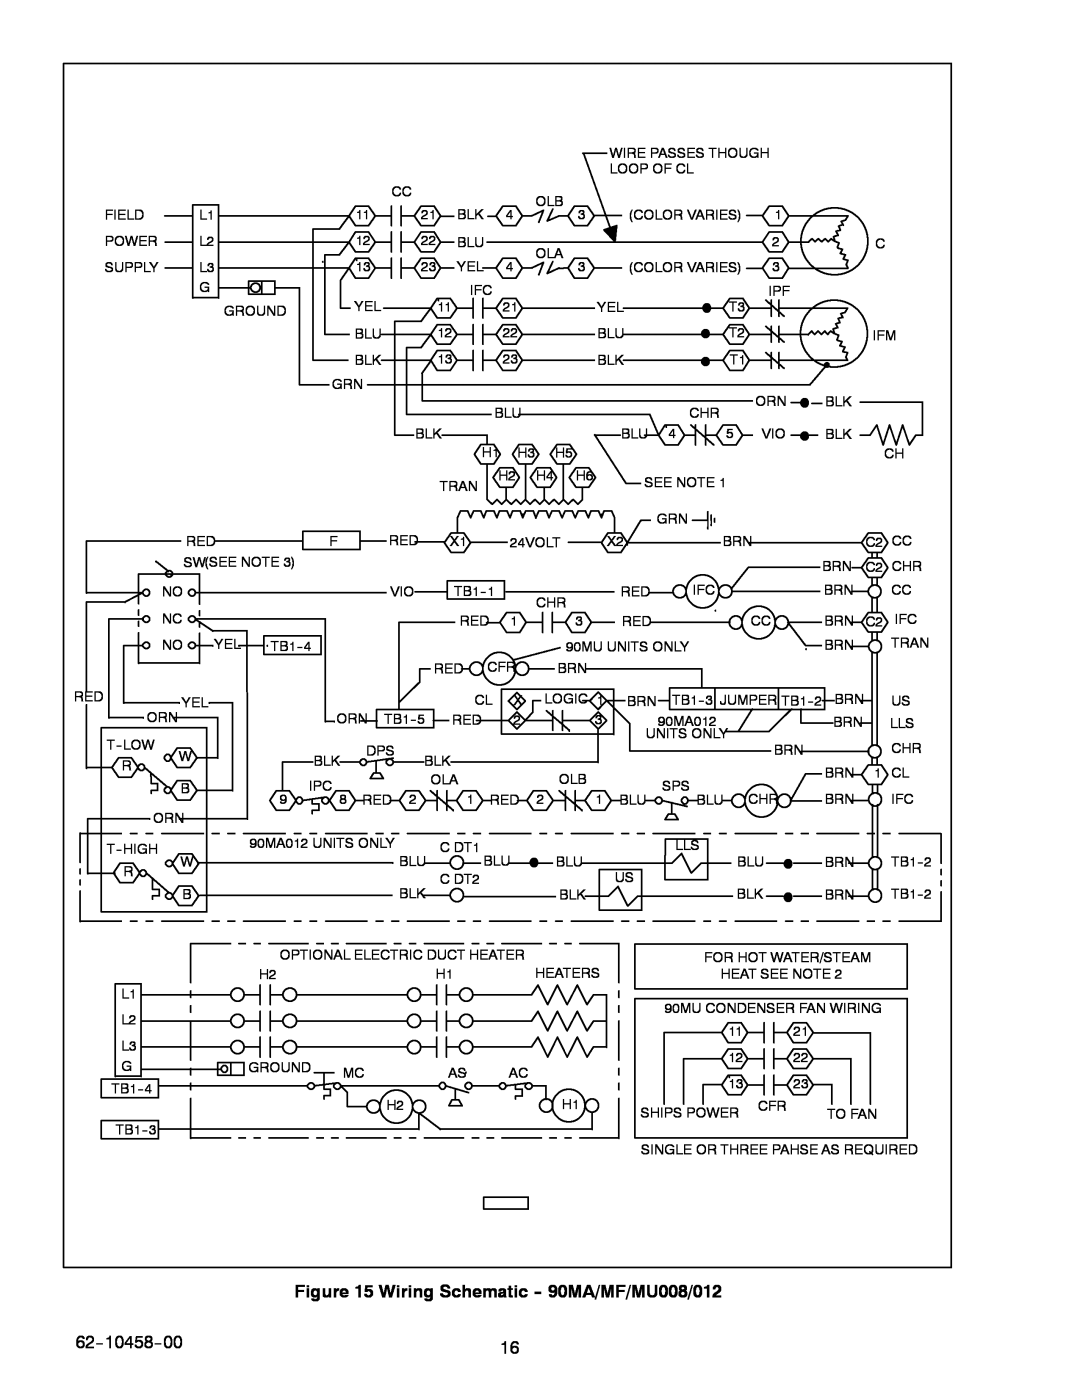 Carrier manual Wiring Schematic --90MA/MF/MU008/012, 62--10458--00 